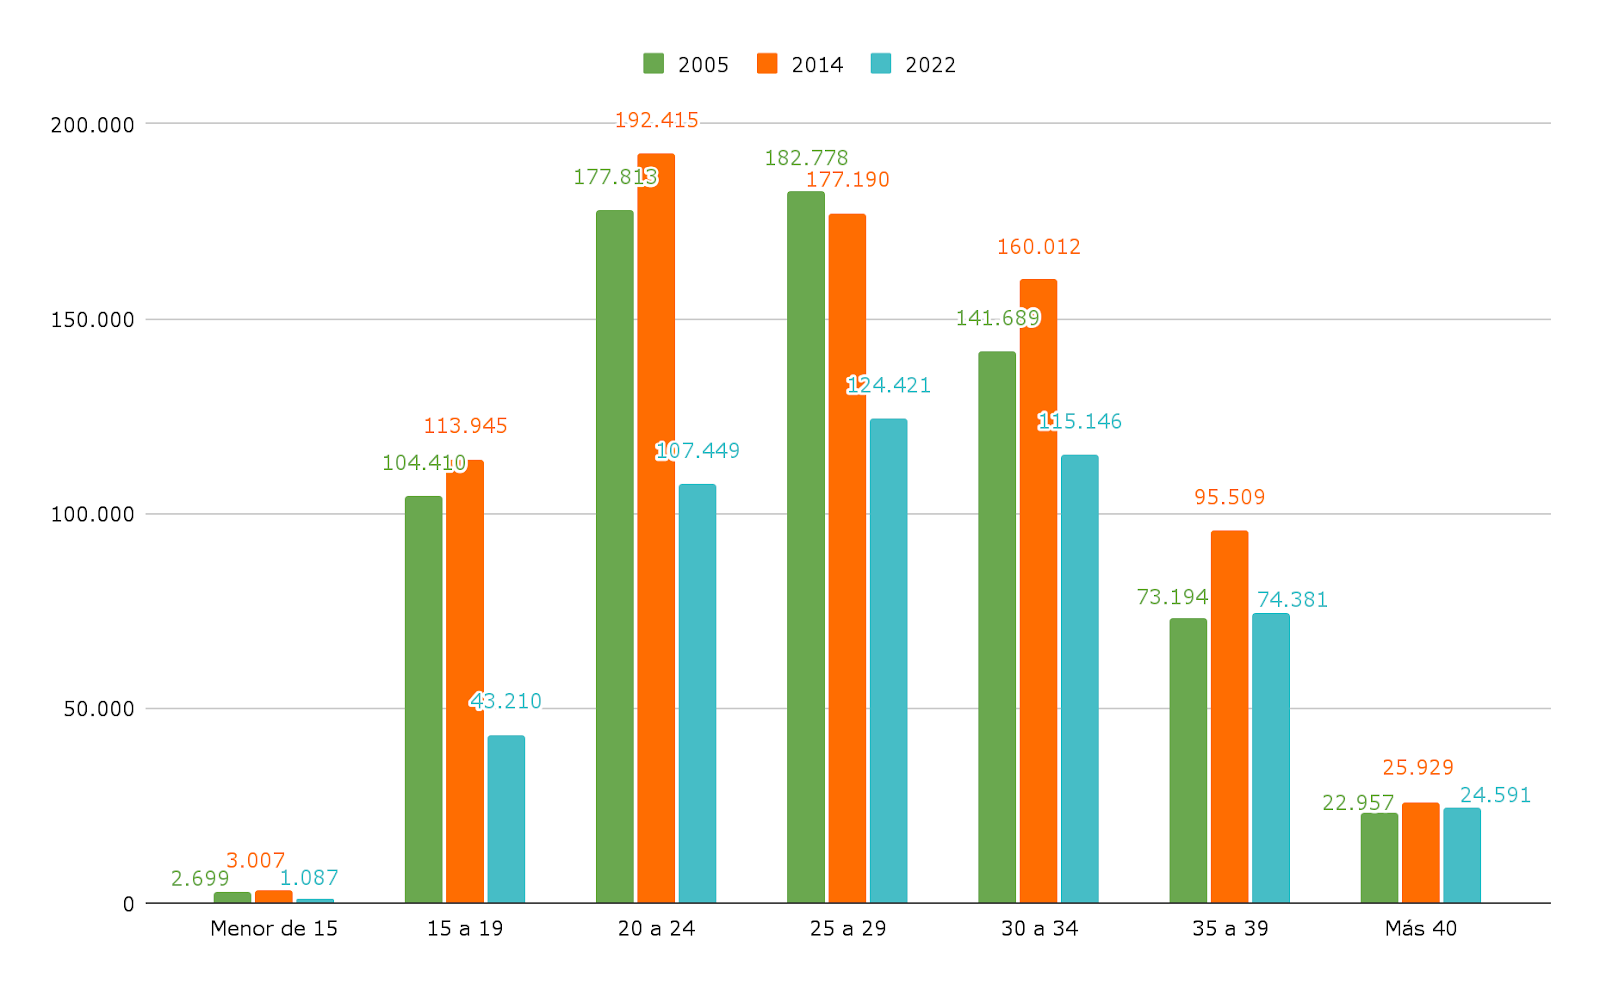 Gráfico 2. Nacidos vivos en 2005, 2014 y 2022 por rango etario de la madre.